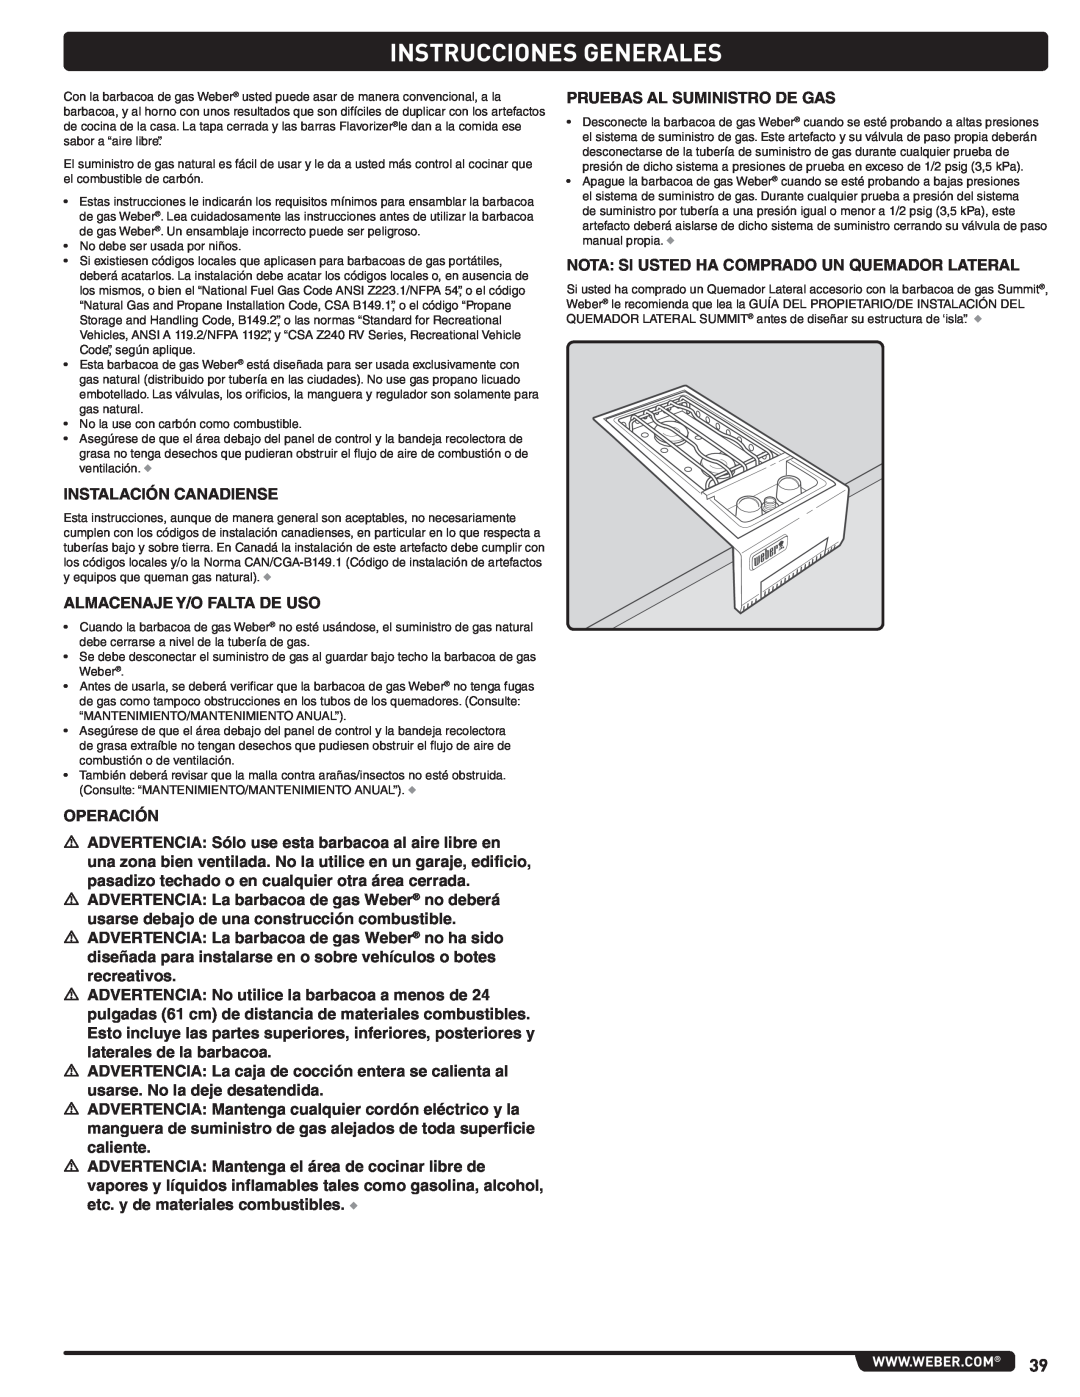 Weber 56576, Summit Gas Grill manual Instrucciones Generales 